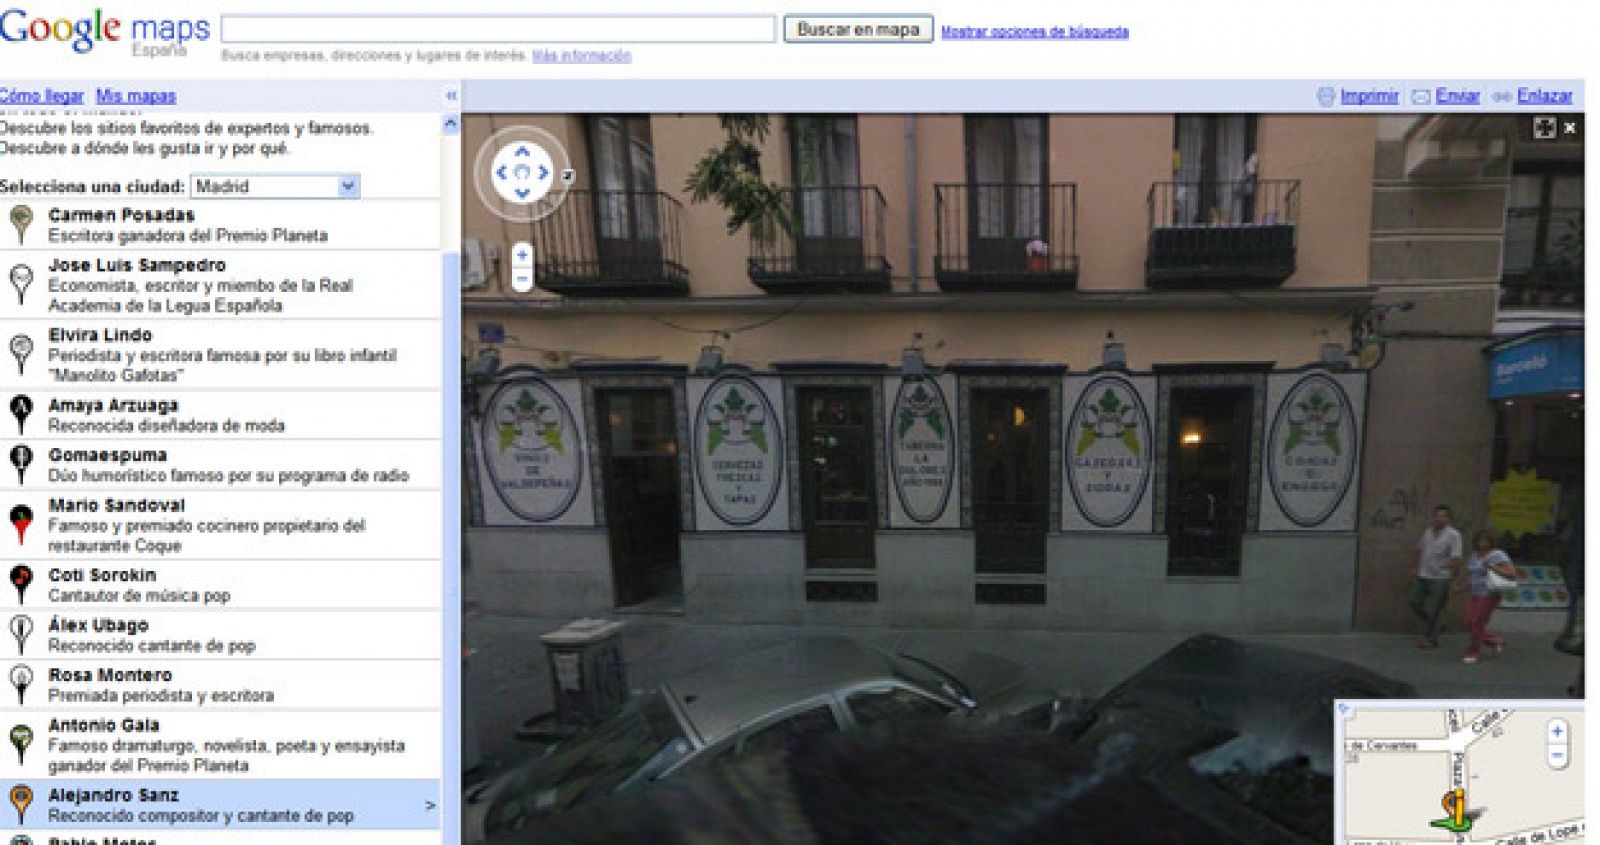 Vista en Google Maps de "Cervecería la Dolores" uno de los sitios preferidos de Alejandro Sanz."El sitio donde mejor tiran la cerveza de todo Madrid" según asegura el cantante